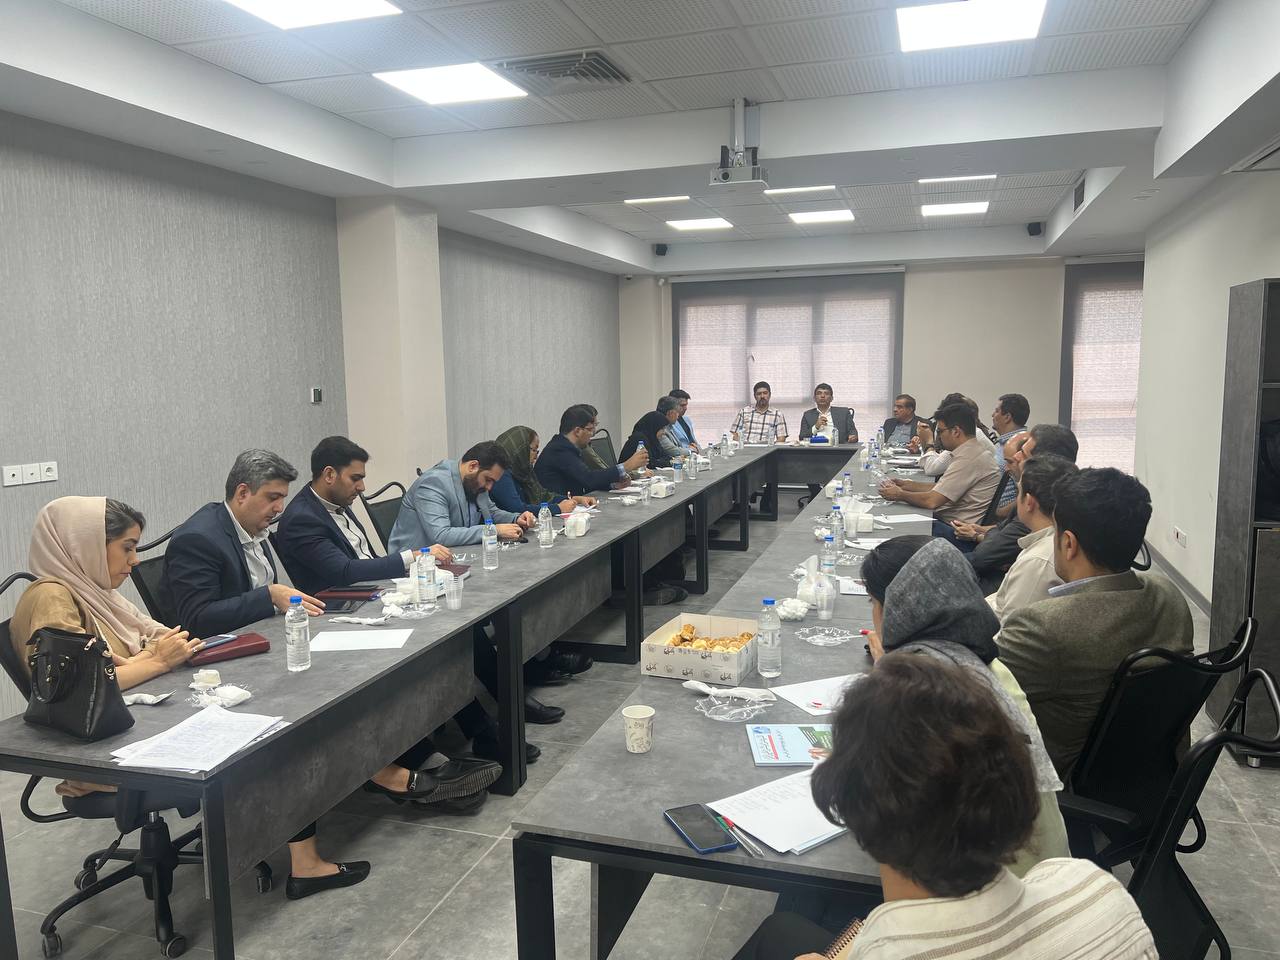 جلسه هم اندیشی با متخصصان و صاحبنظران در انجمن بتن ایران برگزار شد.